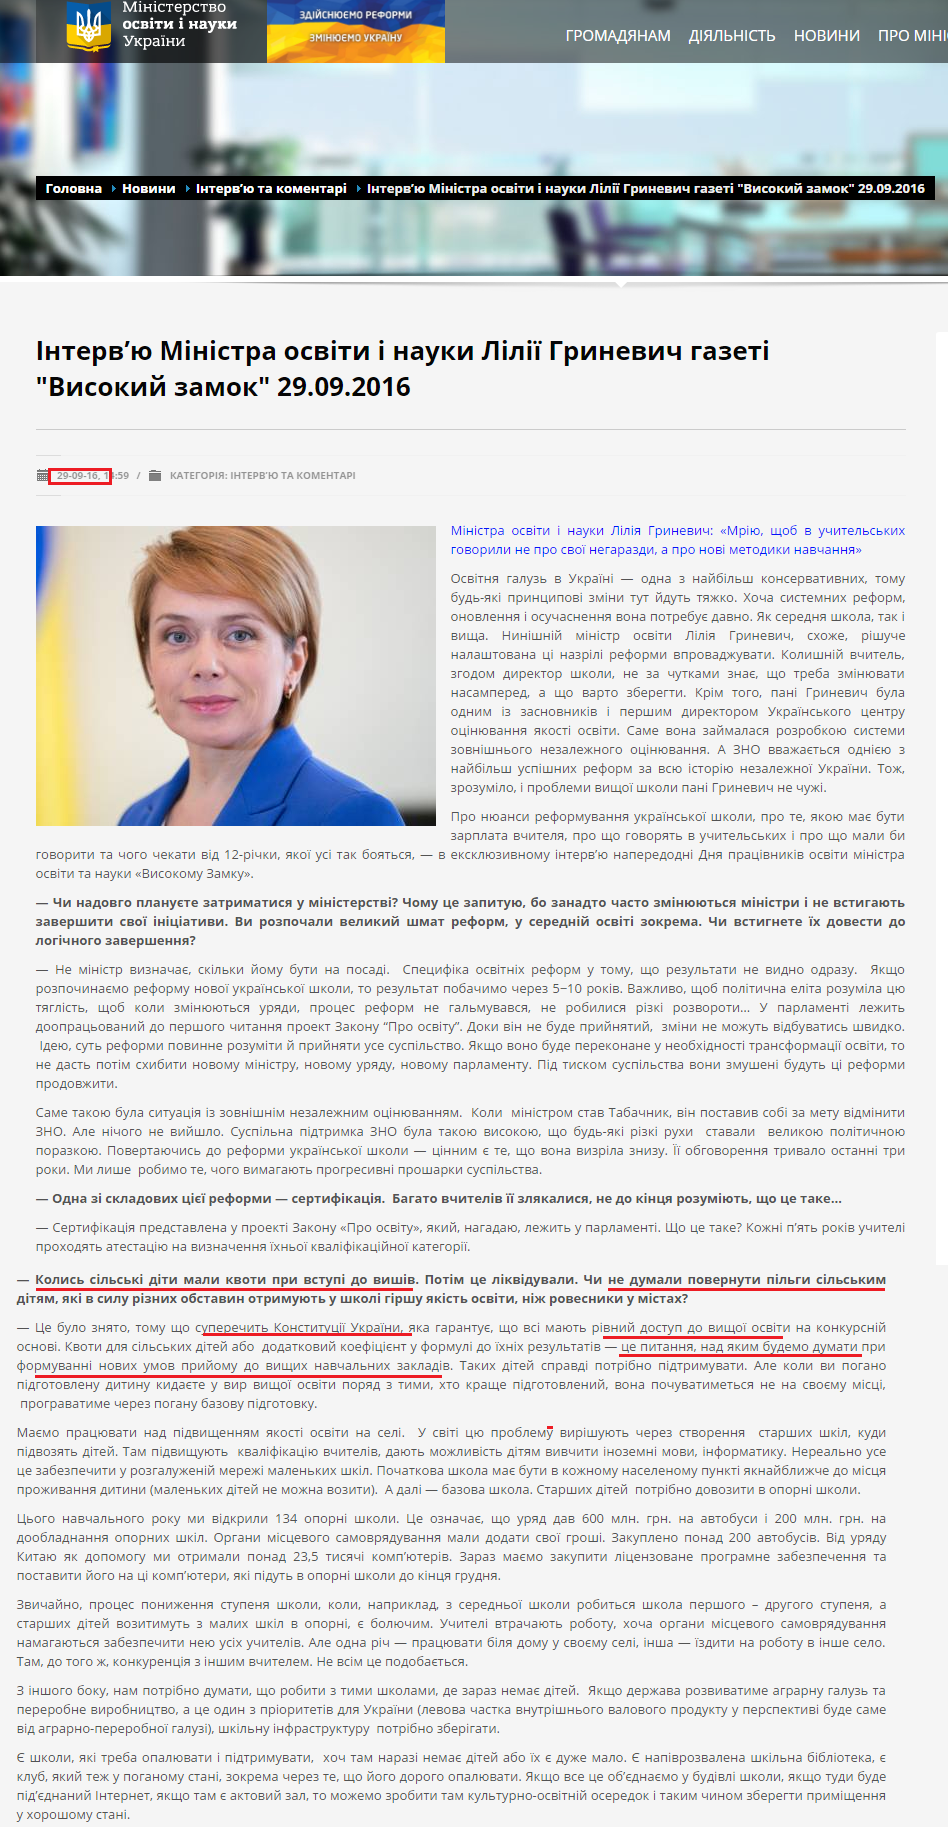 http://mon.gov.ua/usi-novivni/interview/2016/10/03/interv%E2%80%99yu-ministra-osviti-i-nauki-liliyi-grinevich-visokij-zamok-29.09.2016/